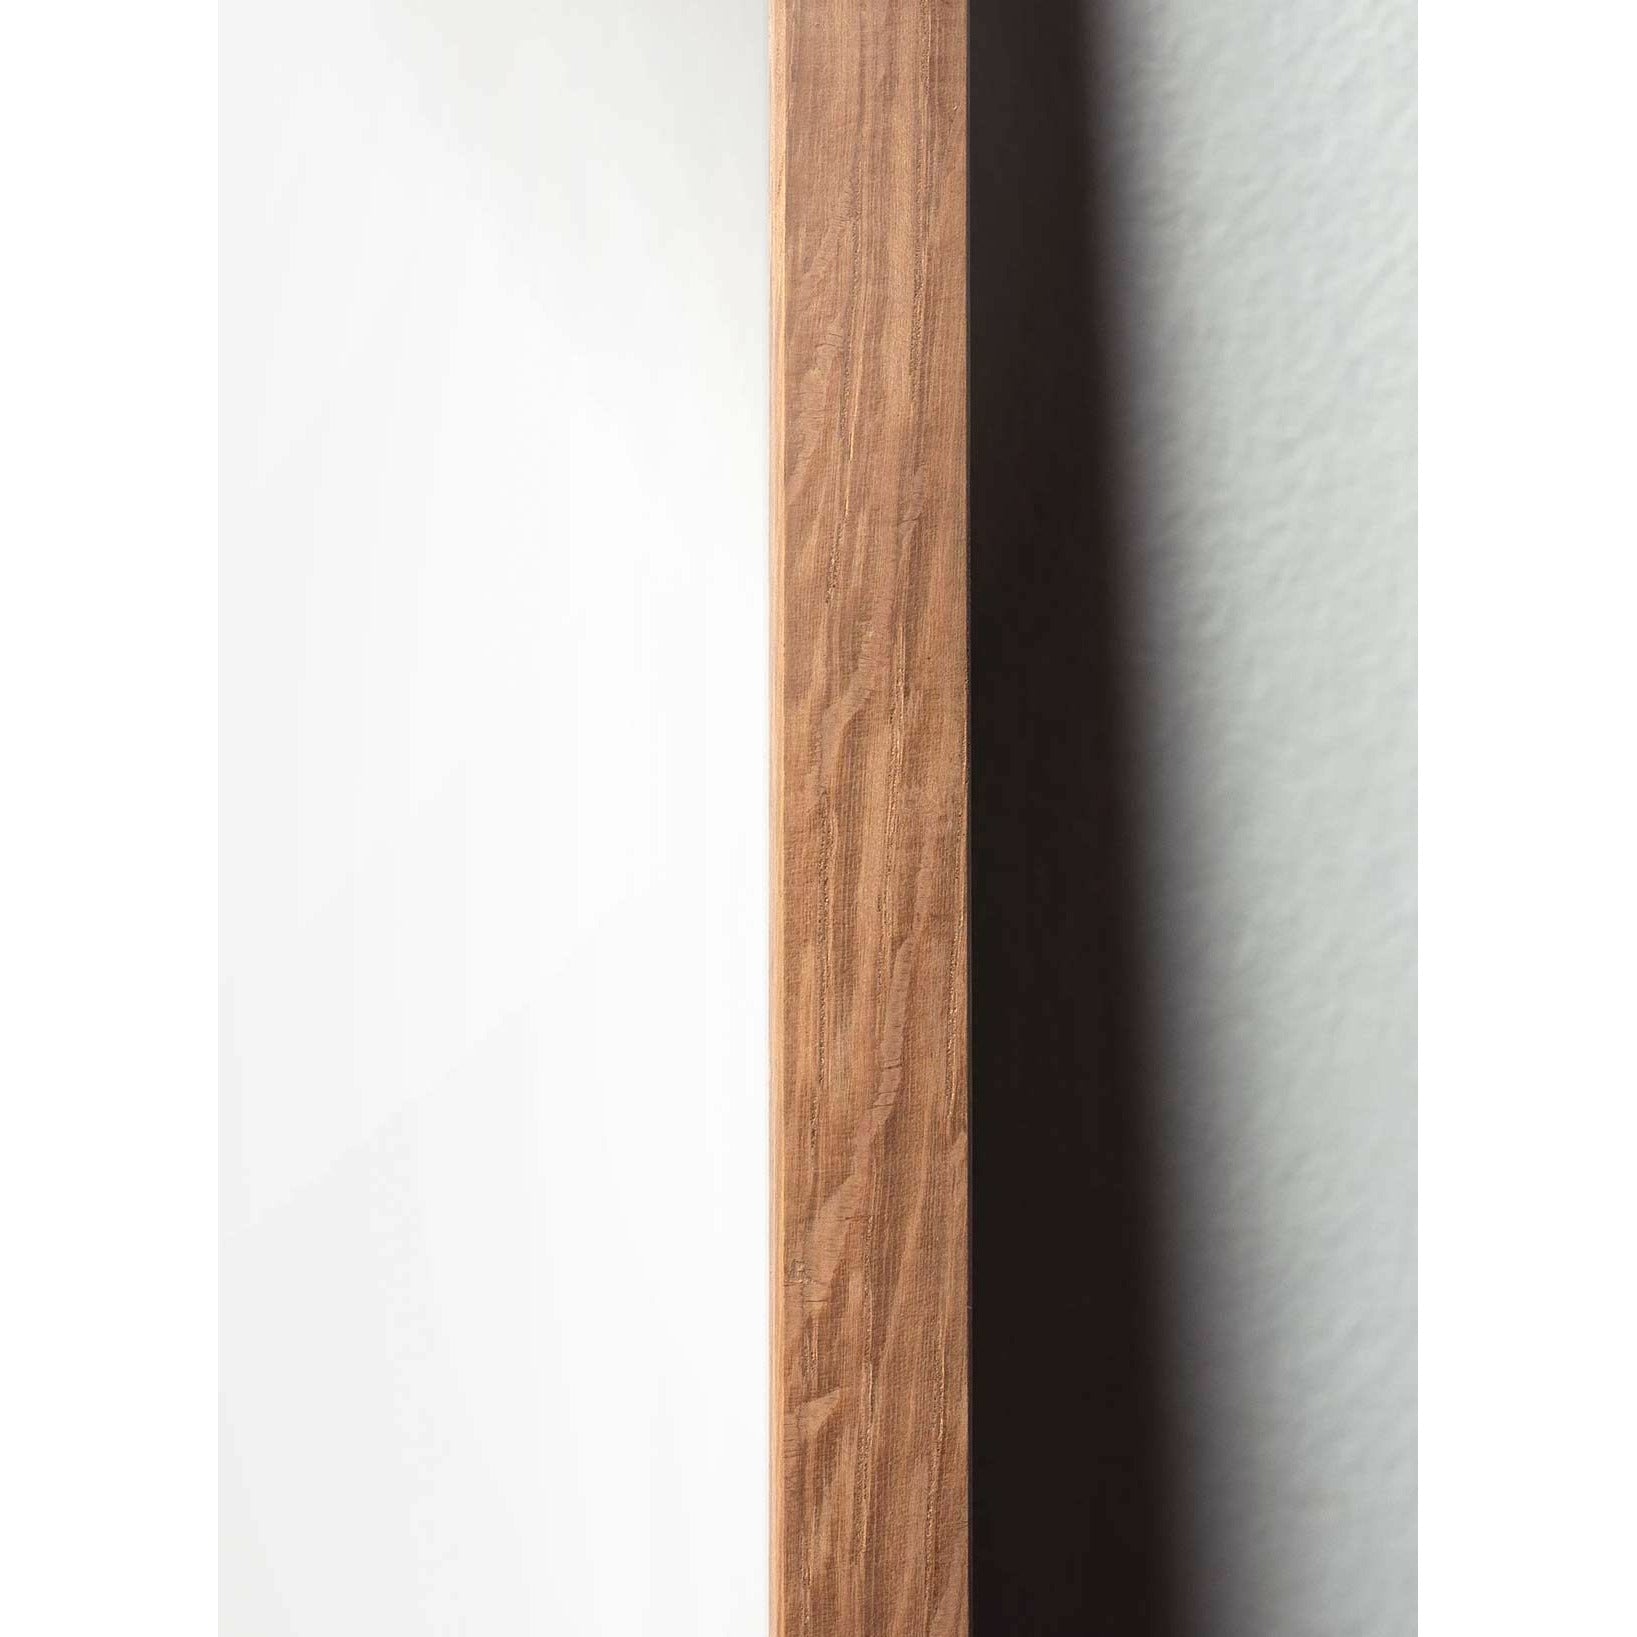 Póster clásico de Swan, marco hecho de madera clara de 30x40 cm, fondo blanco/blanco